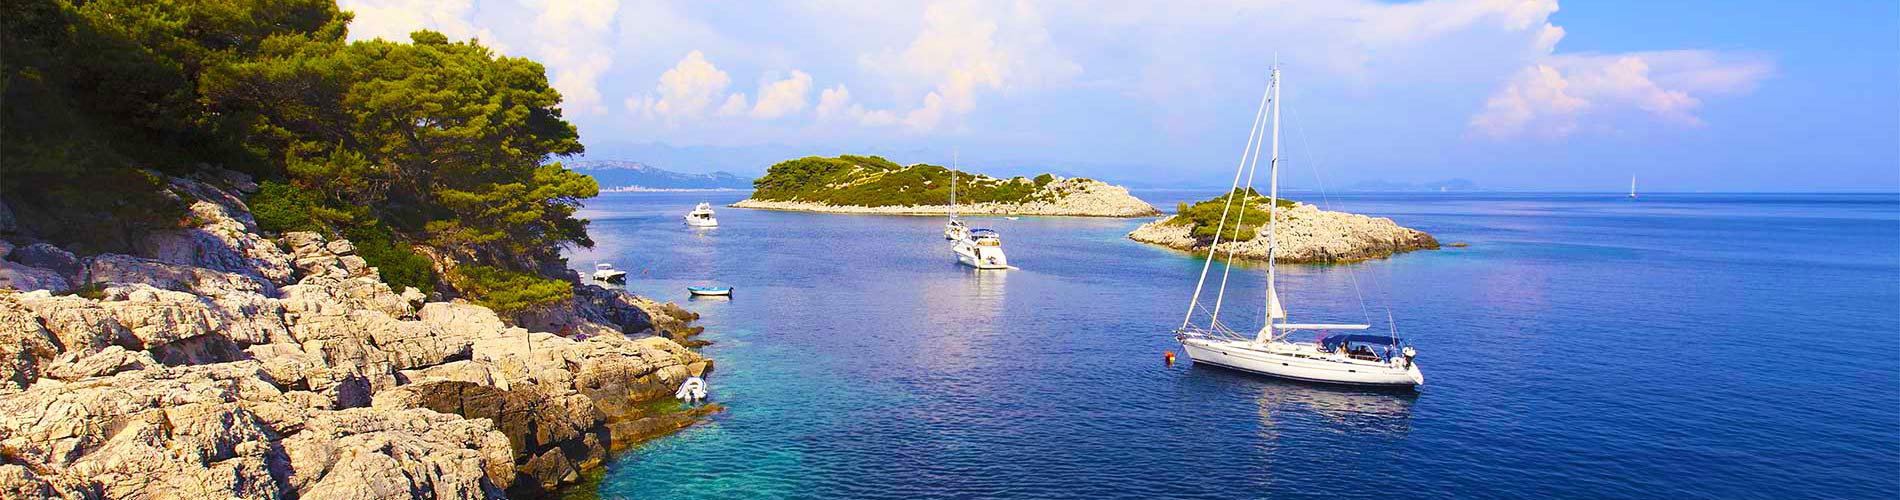 Mljet Island Croatia Holidays.jpg